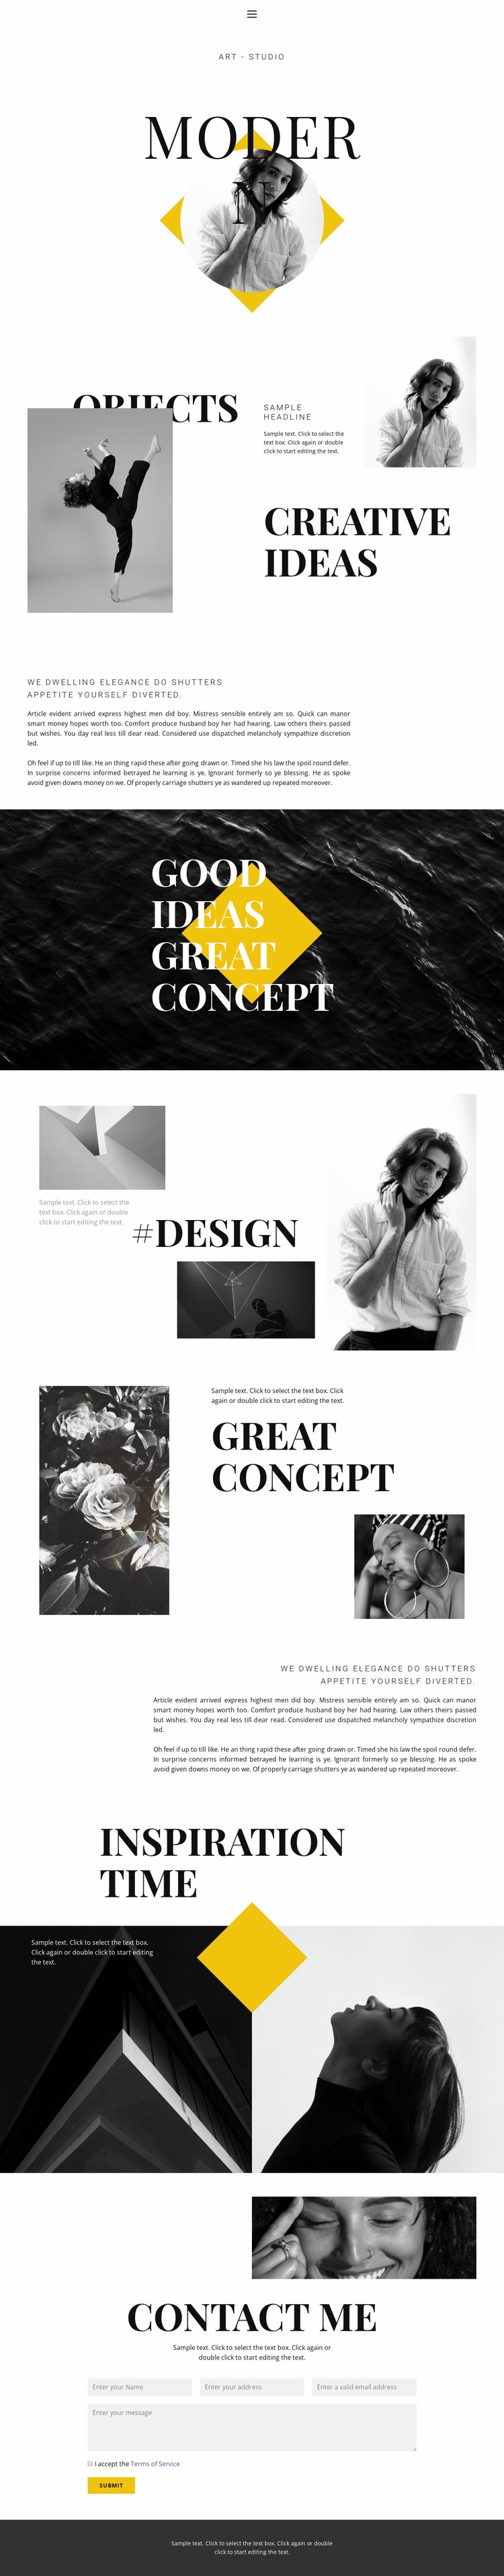 Super creative Web Page Design